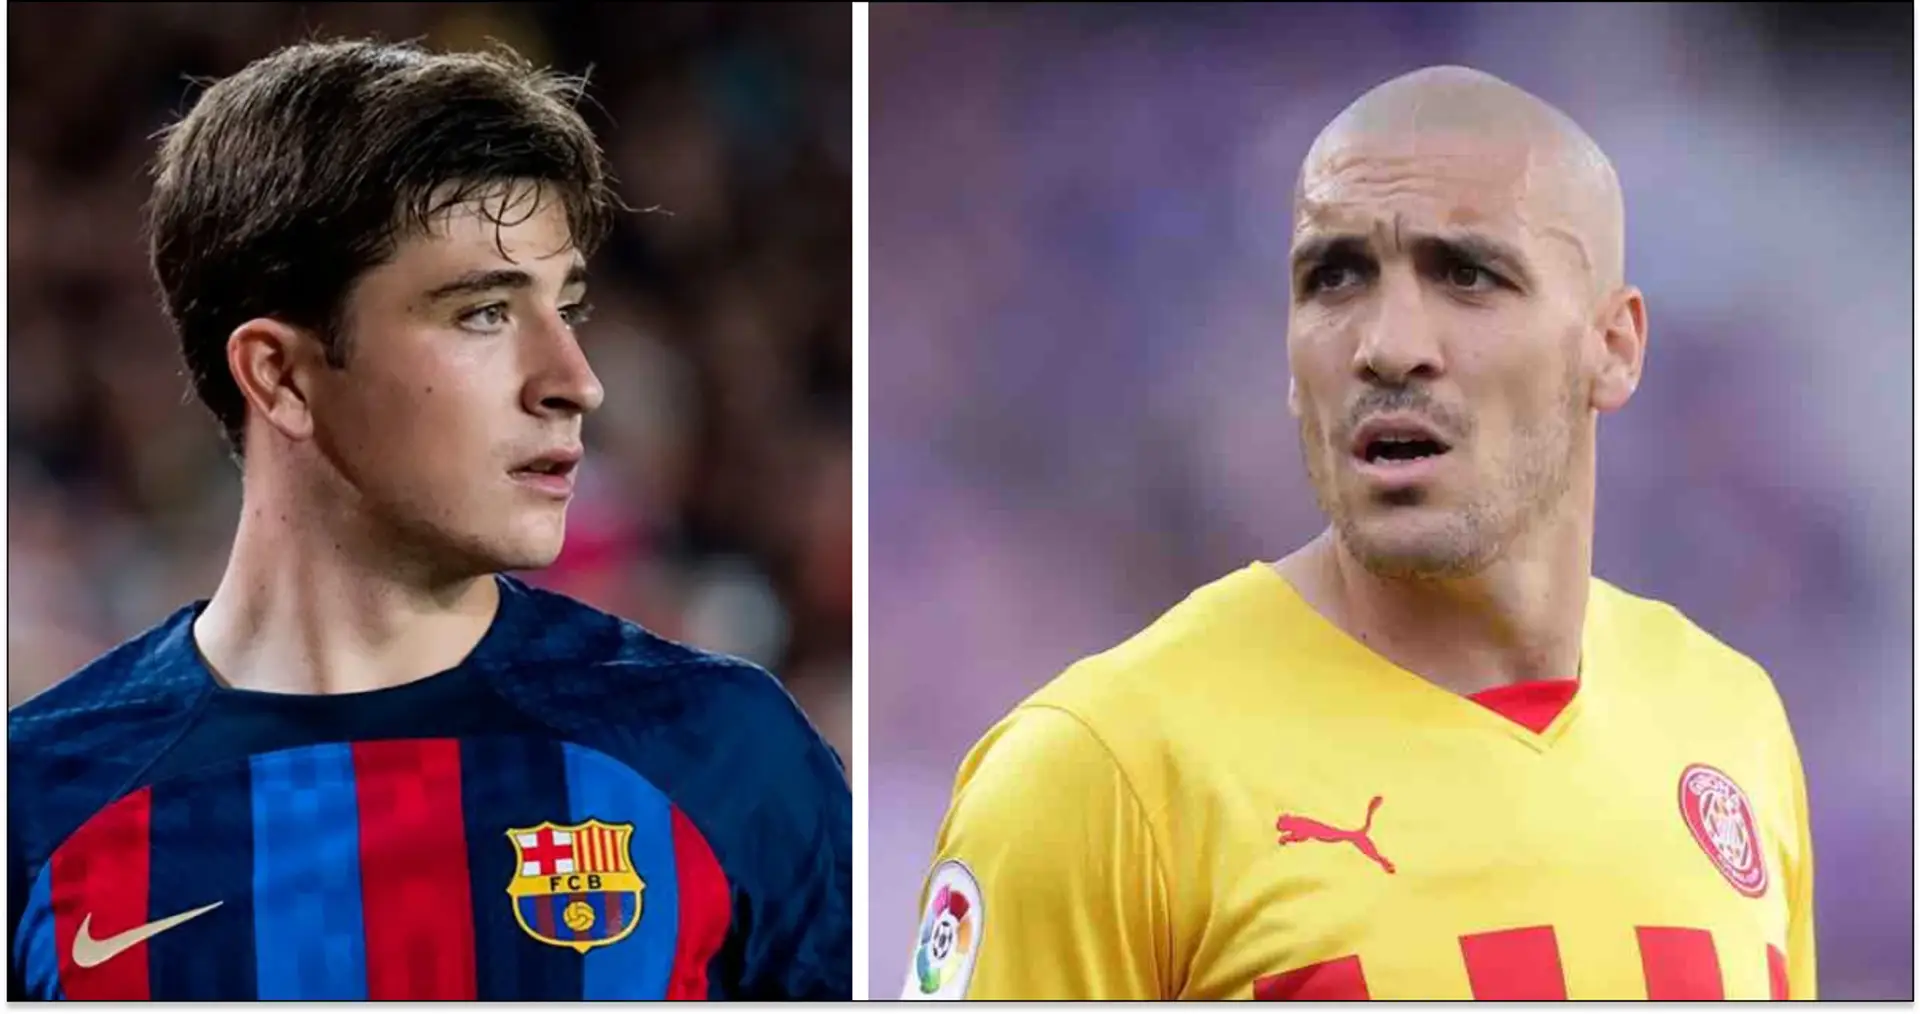 El Barça podría enviar un jugador al Girona a cambio de Romeu: Torre y otros 3 candidatos nombrados (fiabilidad: 4 estrellas)